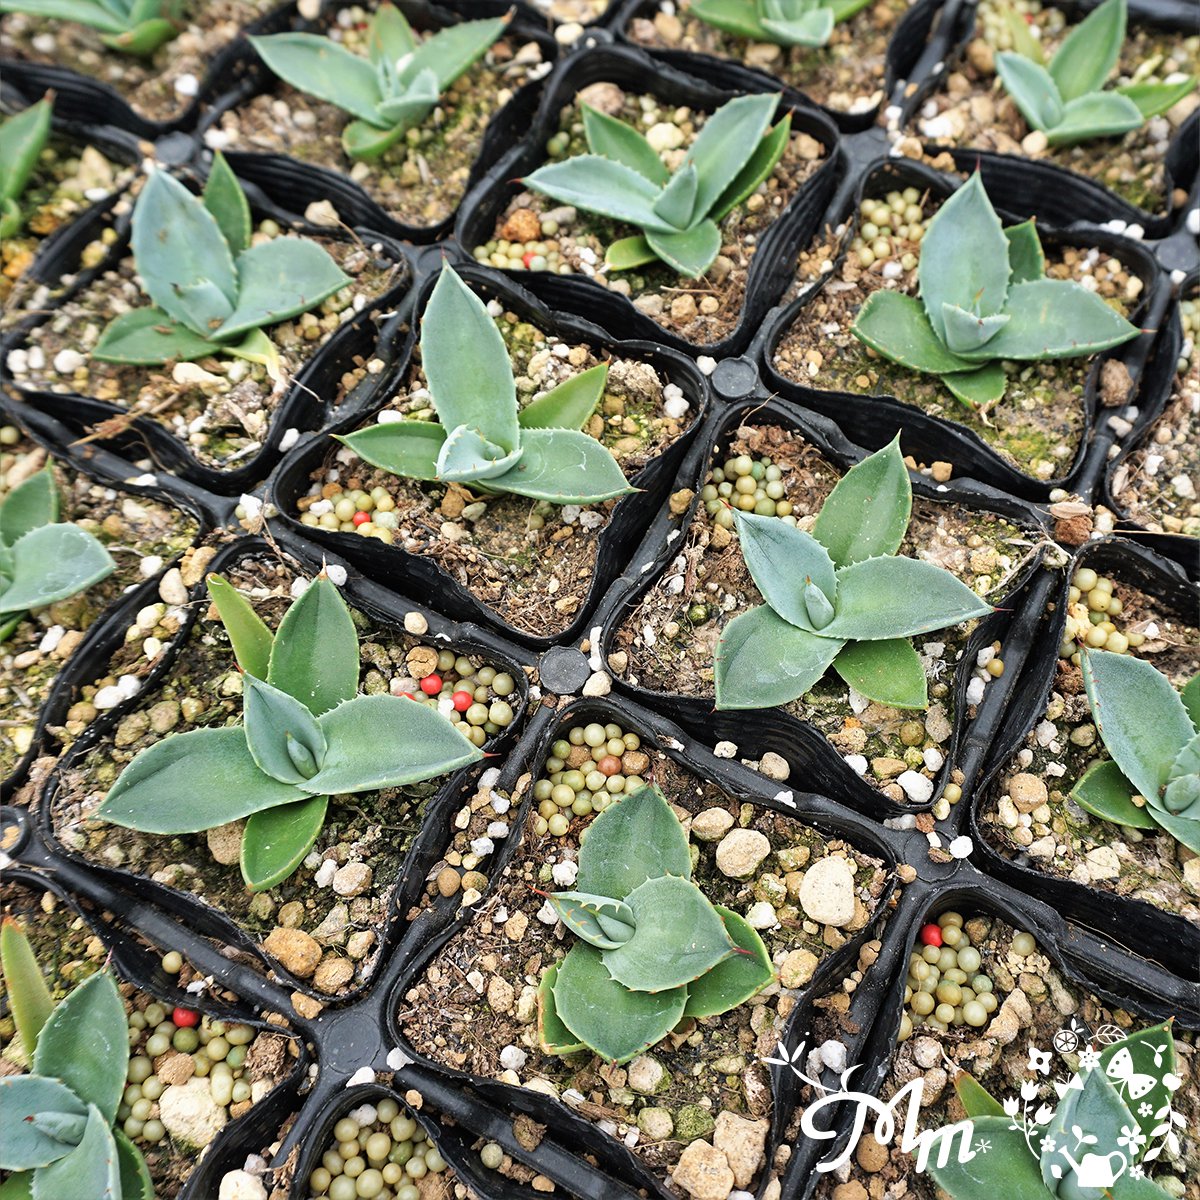 【丸っこい葉が特徴的】Agave parryi var. truncata (アガベ パリートランカータ)7.5�ポット苗(メリクロン苗)